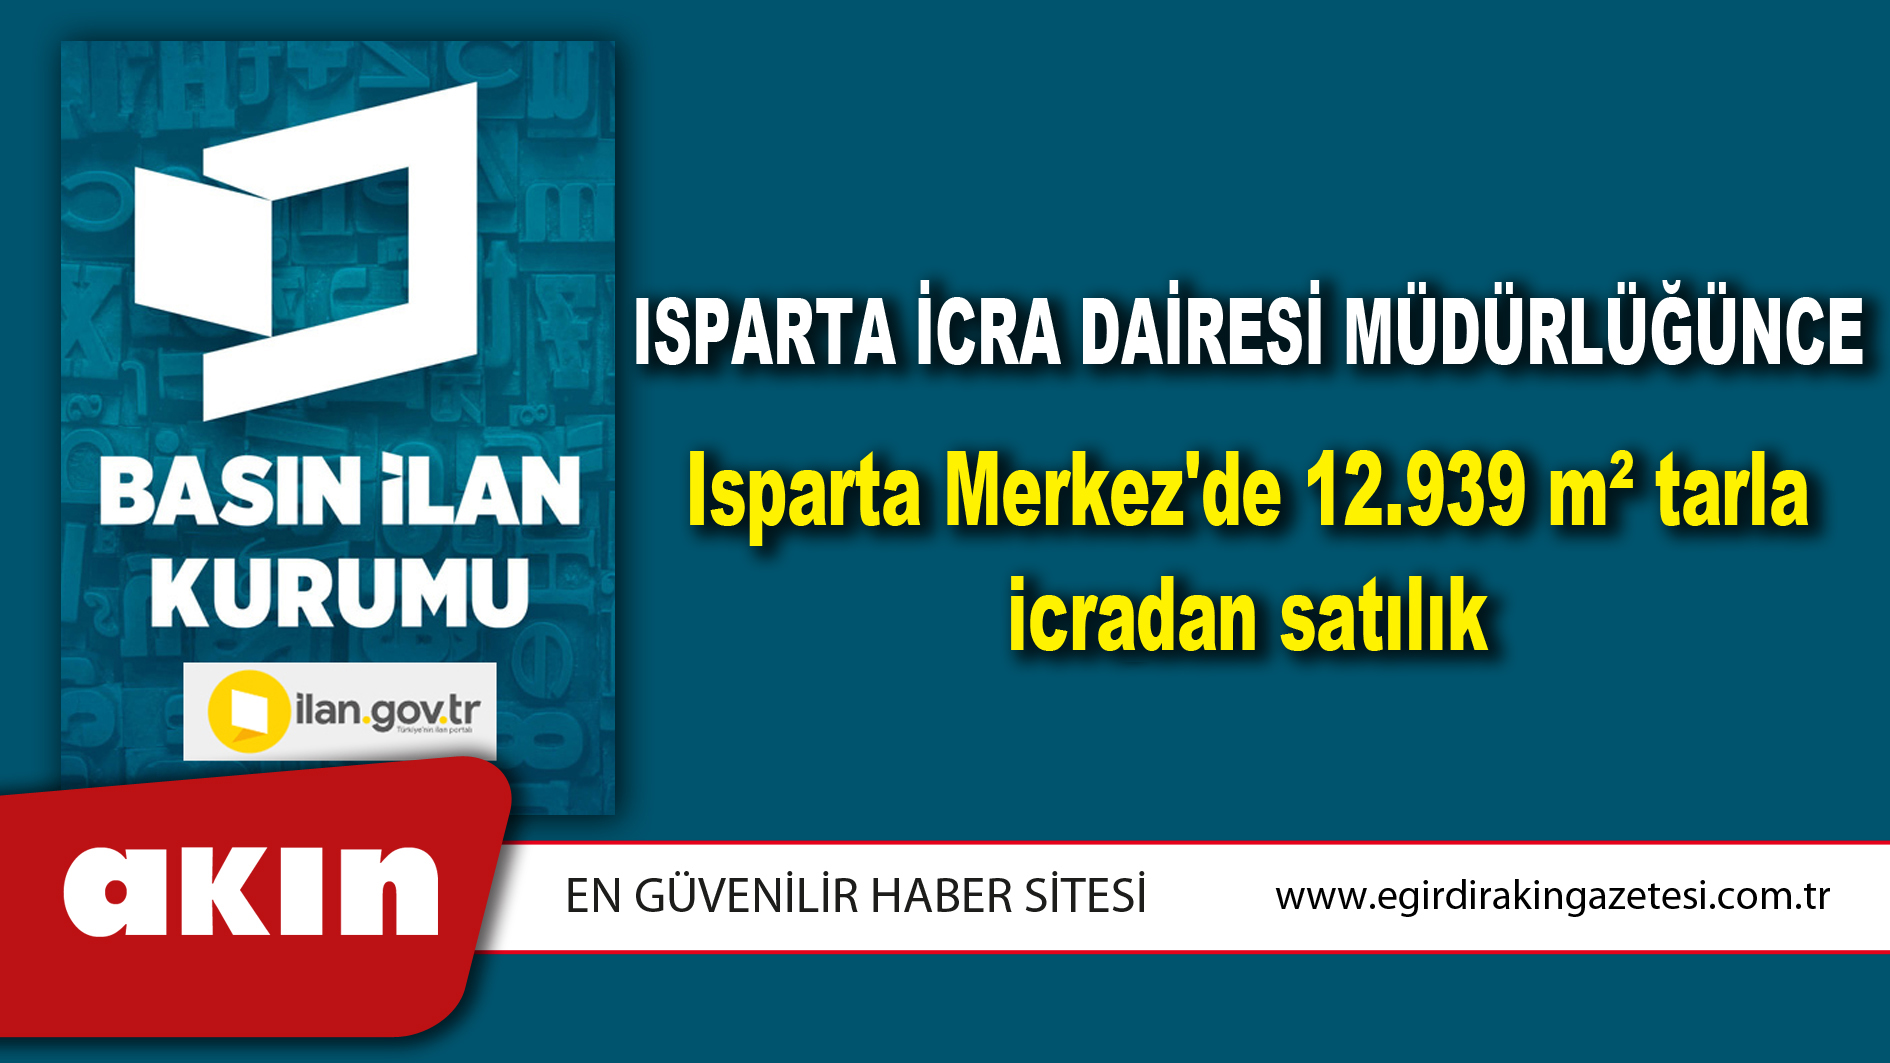 Isparta İcra Dairesi Müdürlüğünce Isparta Merkez'de 12.939 m² tarla icradan satılık